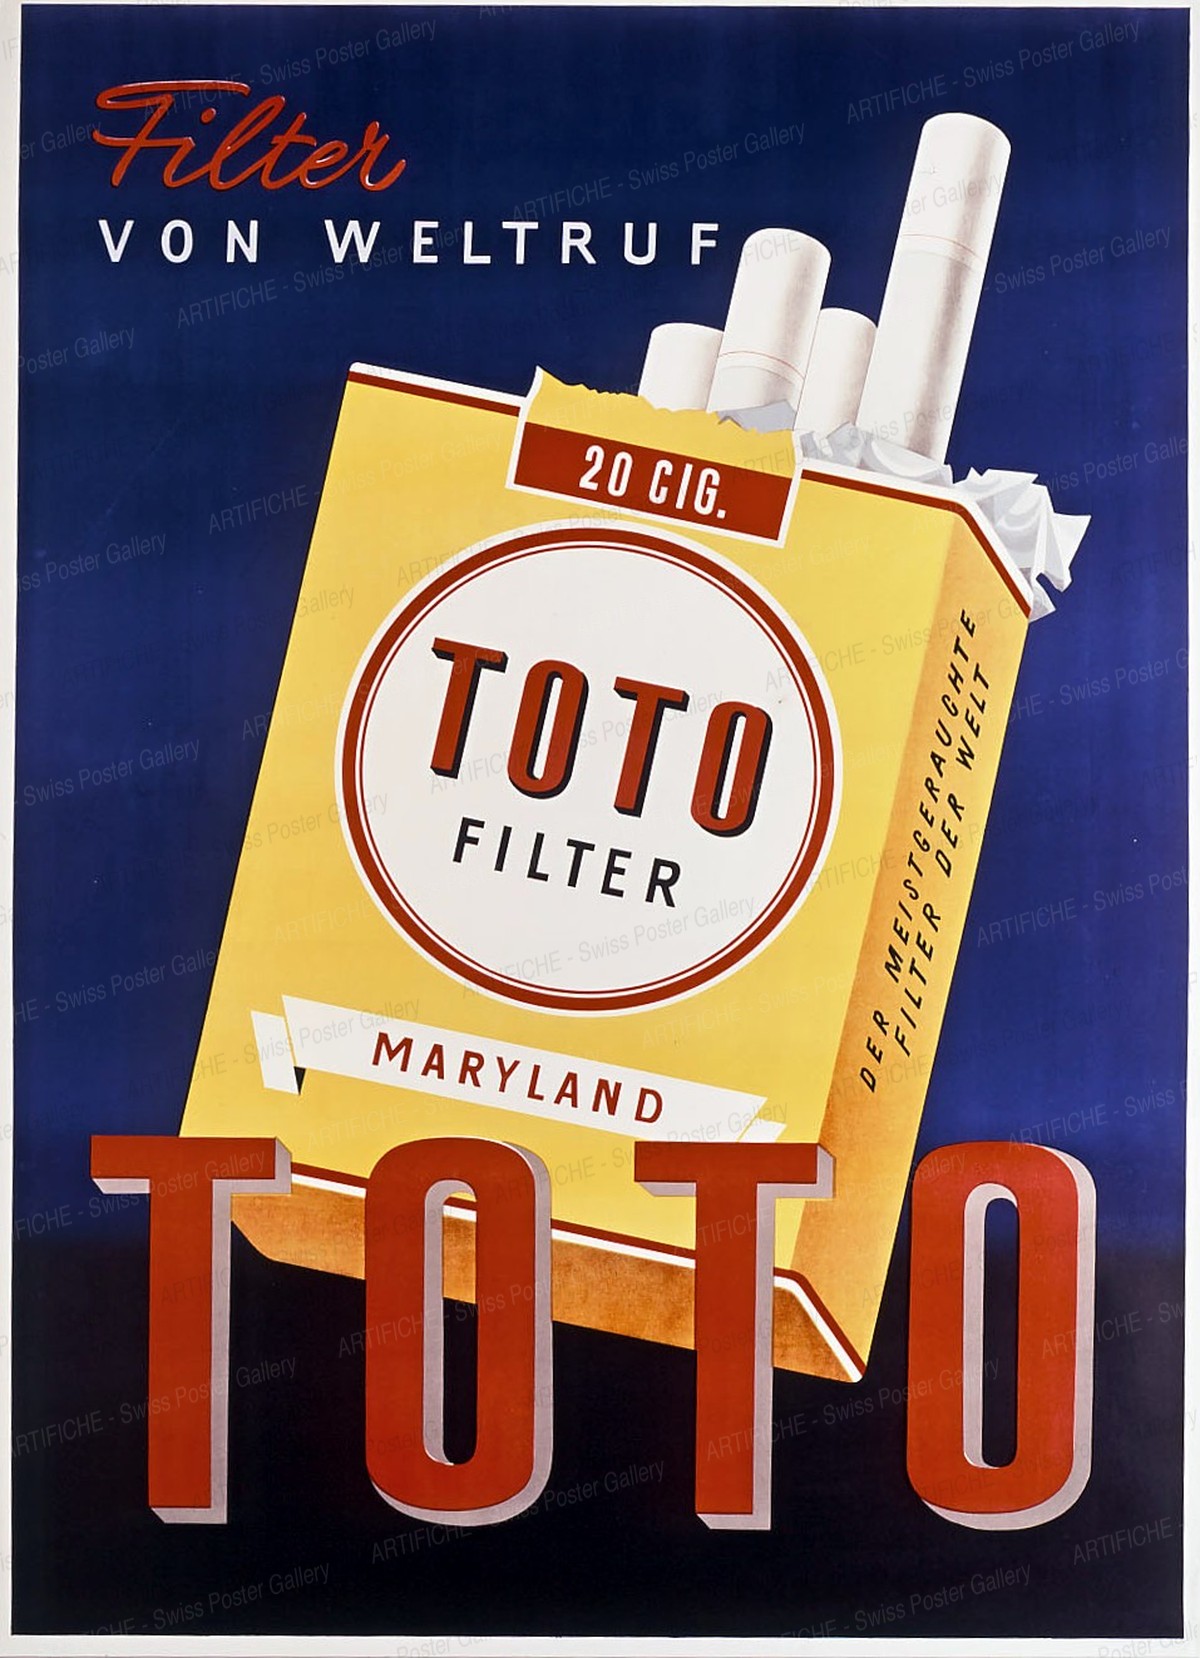 TOTO Filter Maryland – von Weltruf, Artist unknown